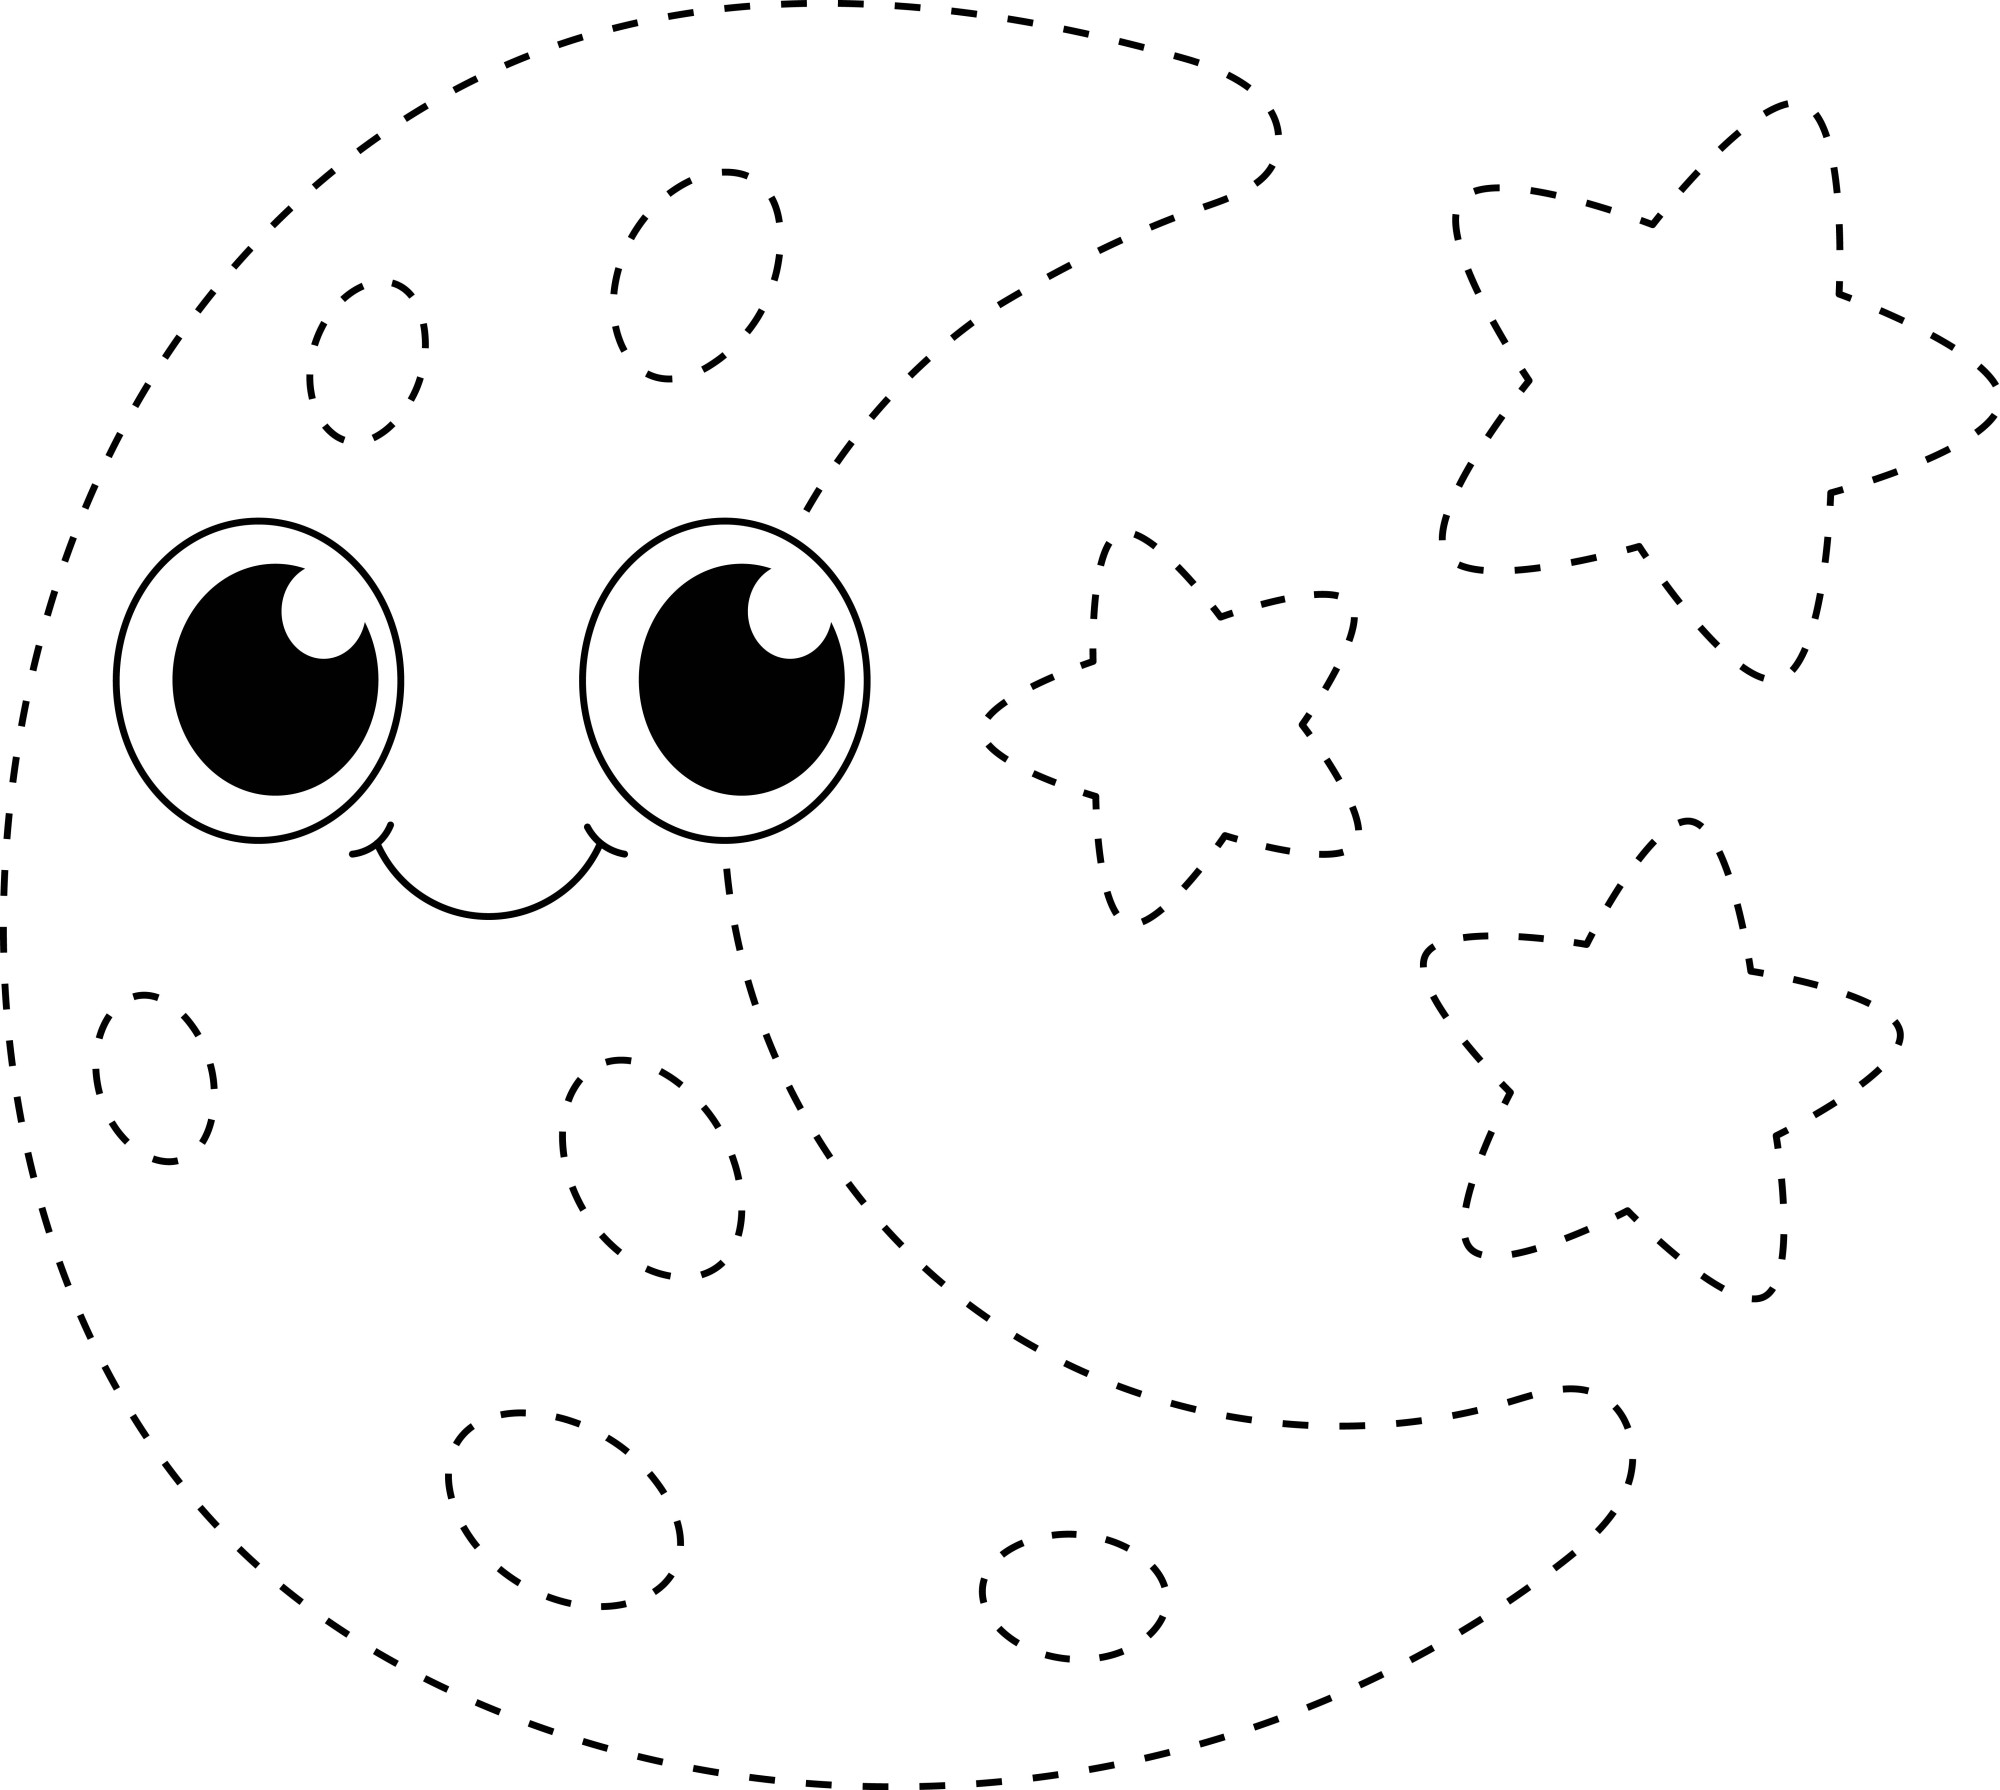 Раскраска для детей: луна и звезды по точкам